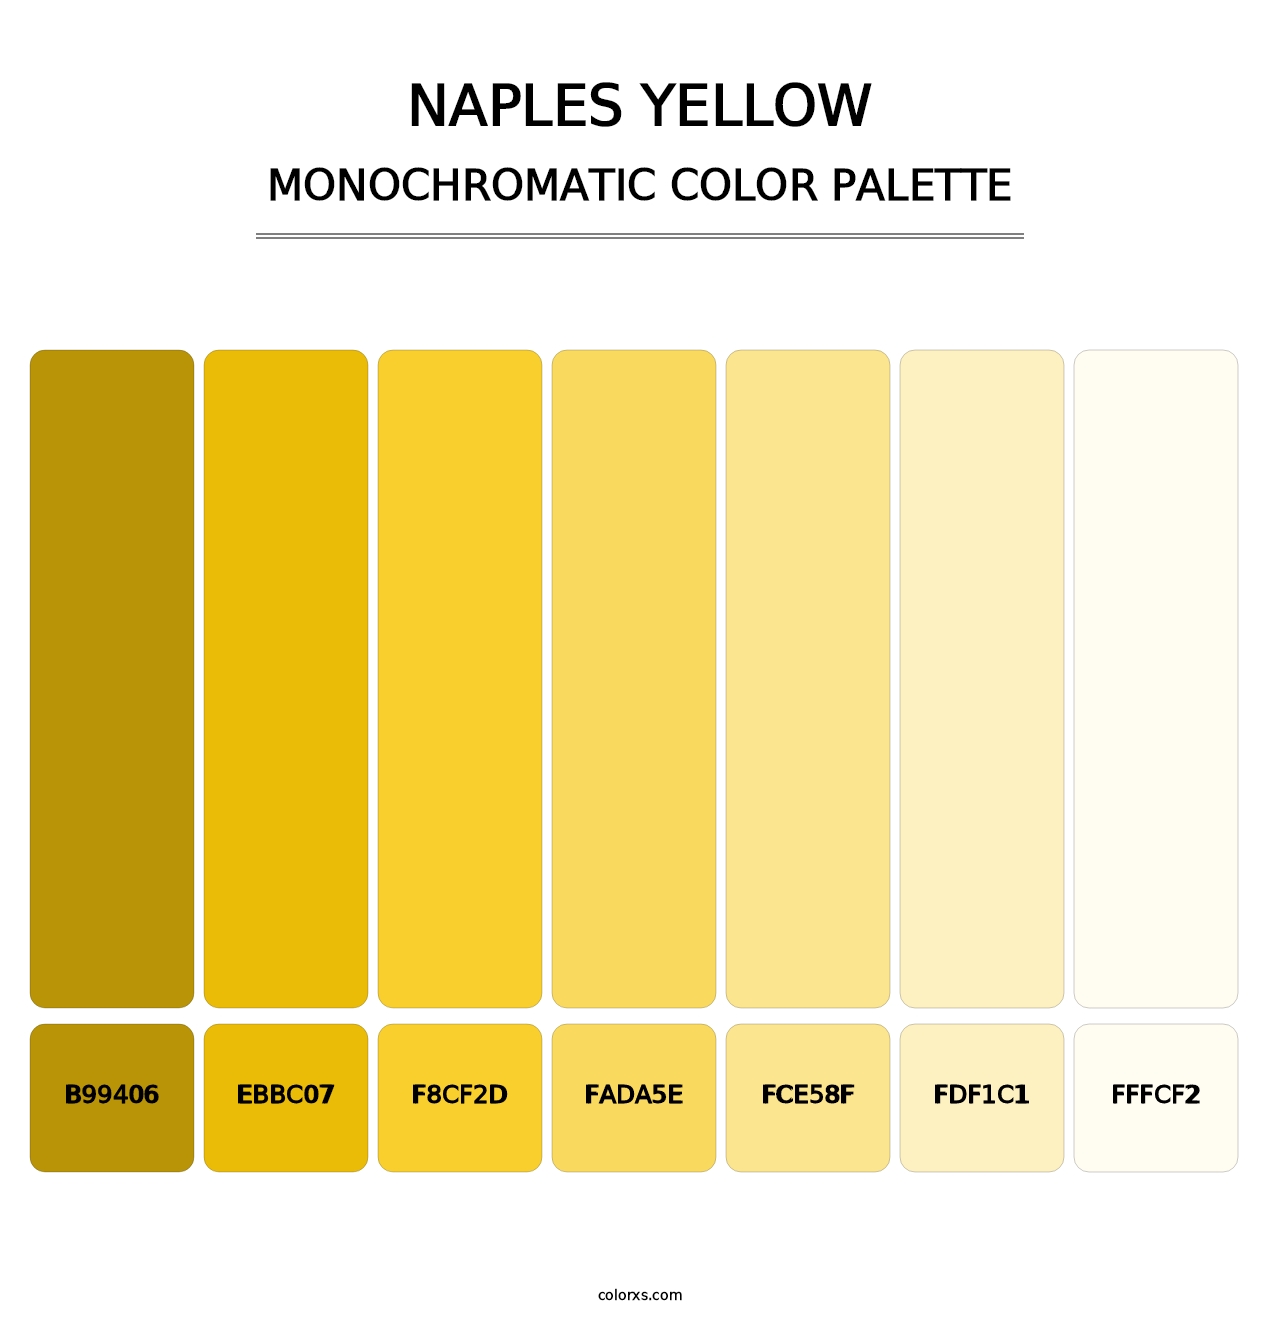 Naples Yellow - Monochromatic Color Palette